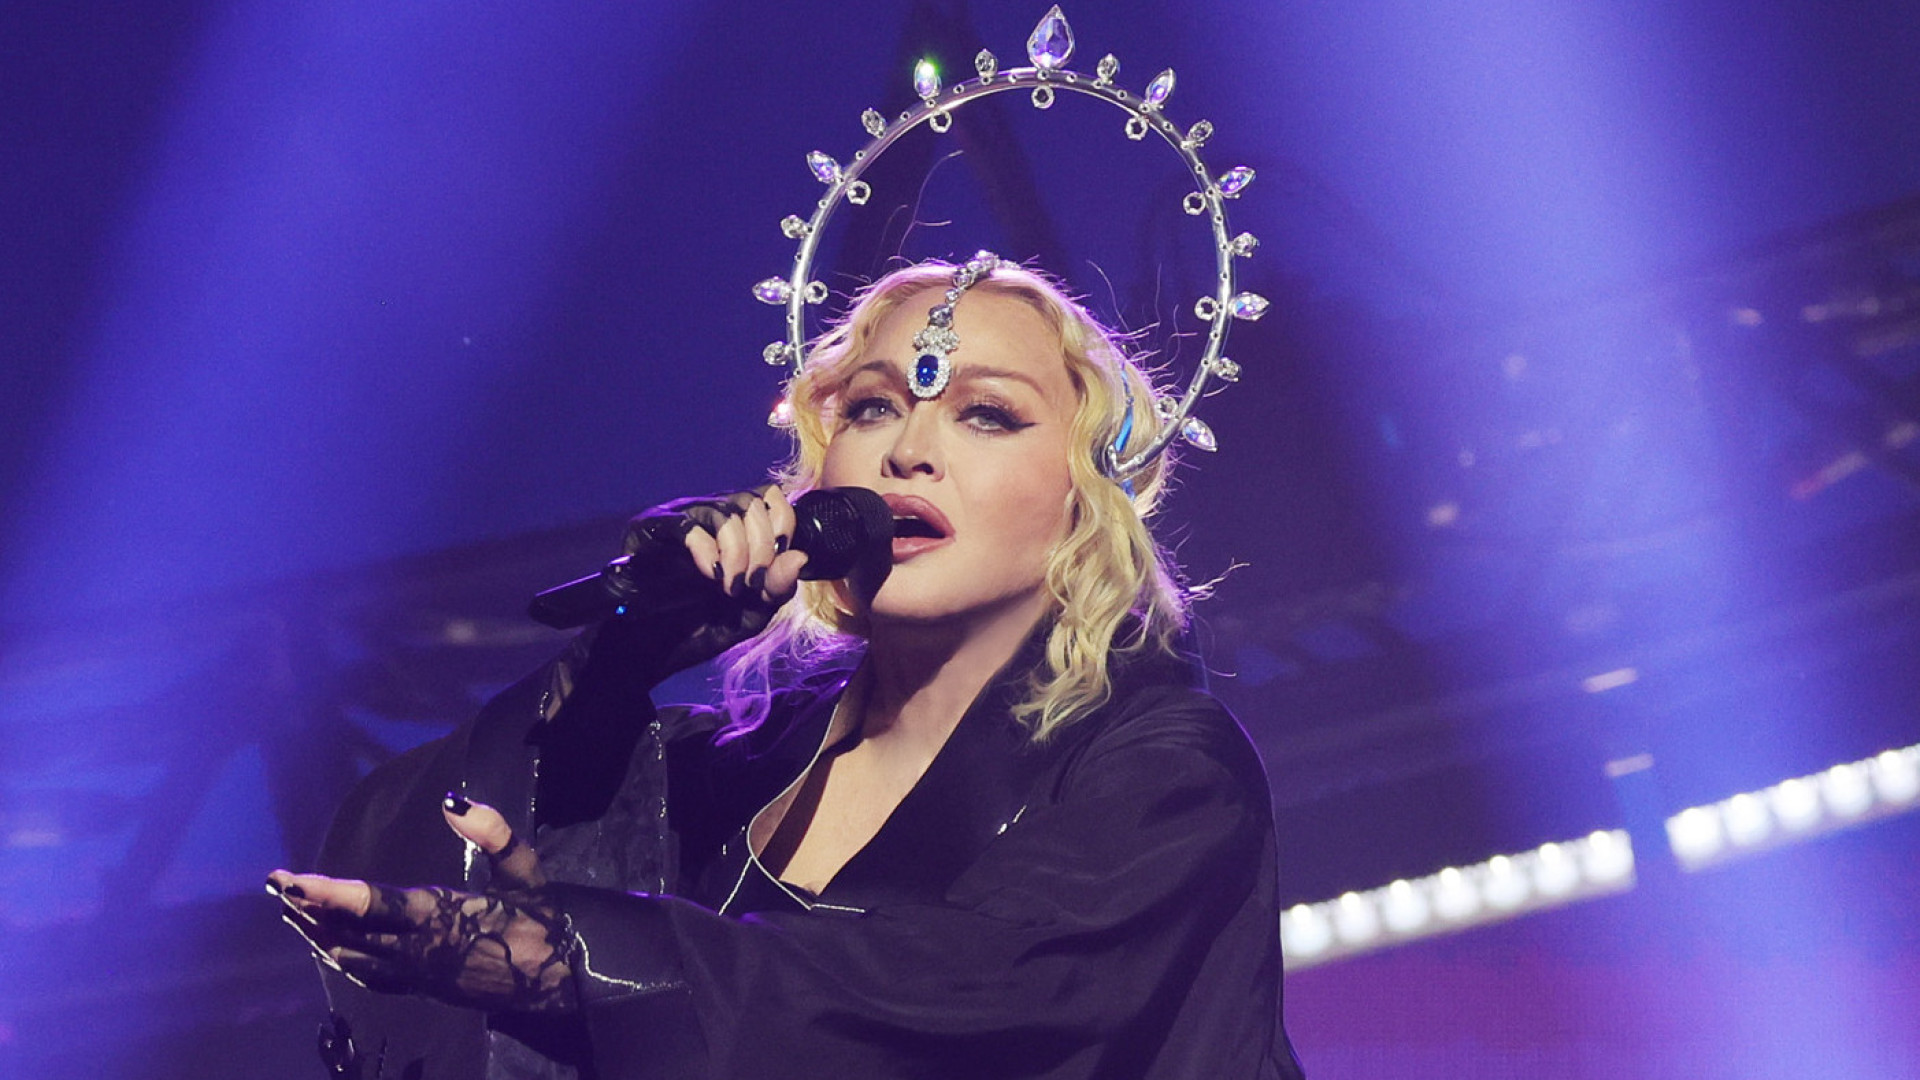 Show de Madonna: Globo tem maior audiência nas noites de sábado desde 2018